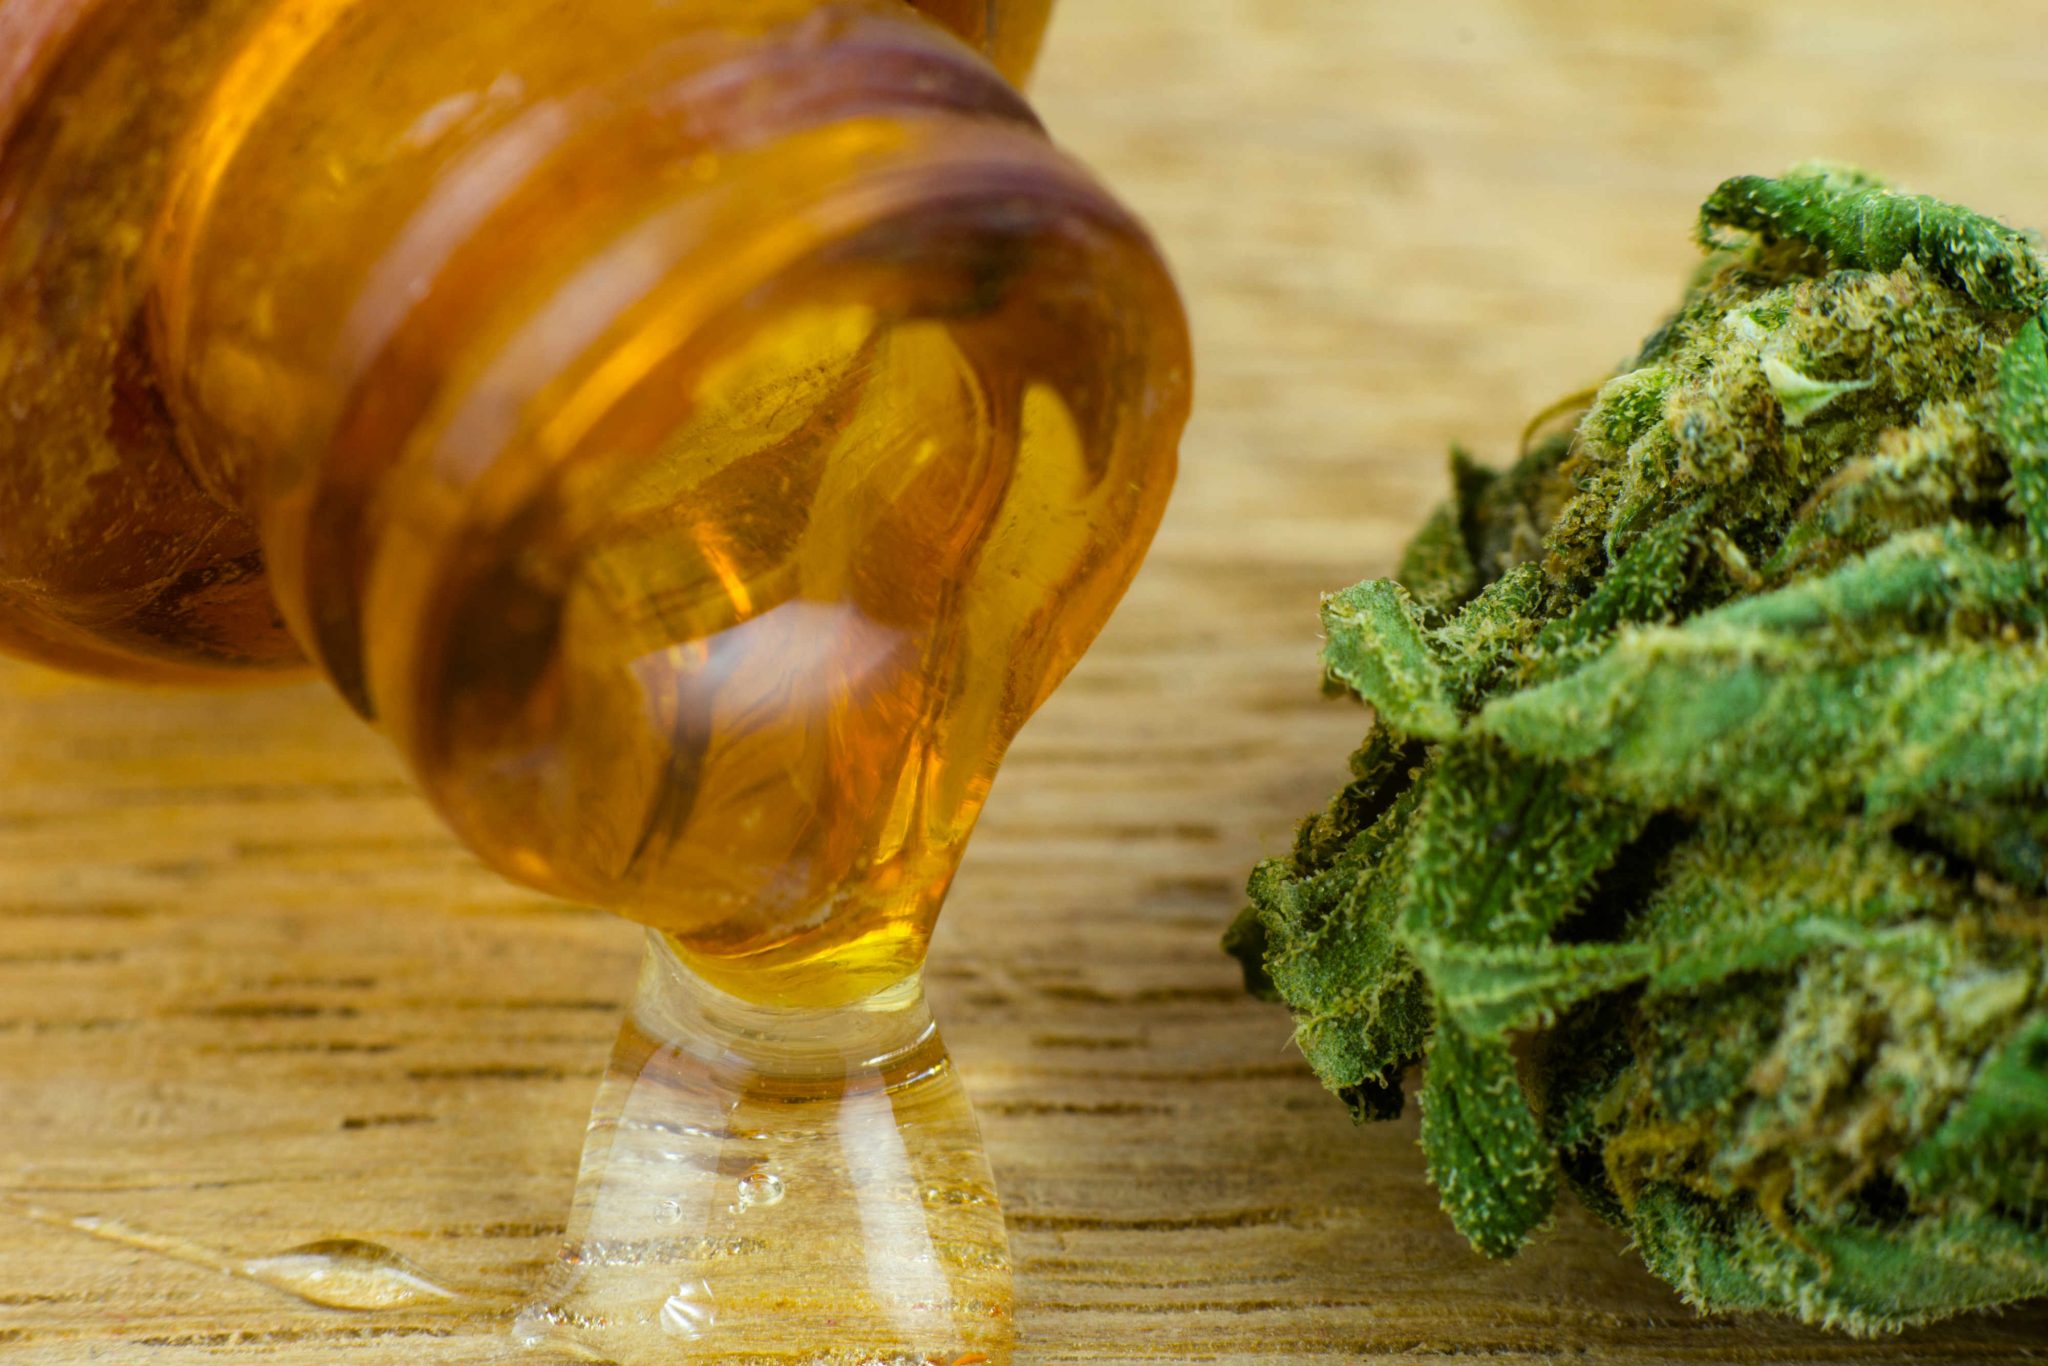 How long does cannabis oil last?